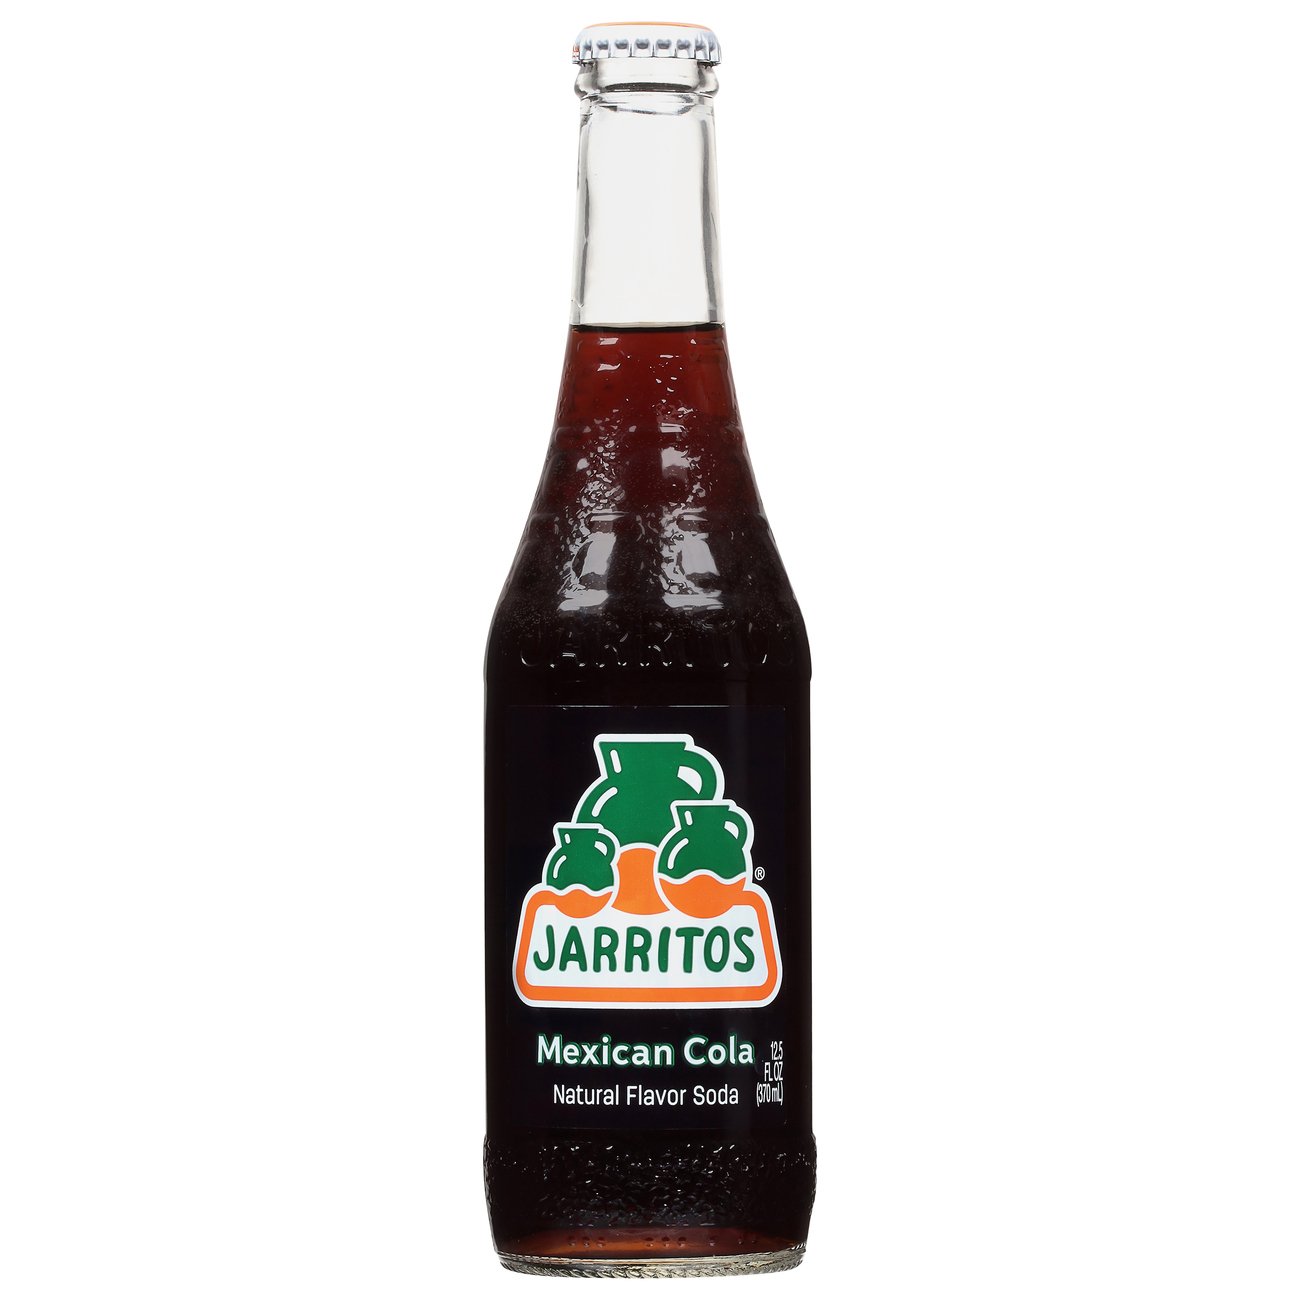 Jarritos Mexican Cola Shop Soda At H E B